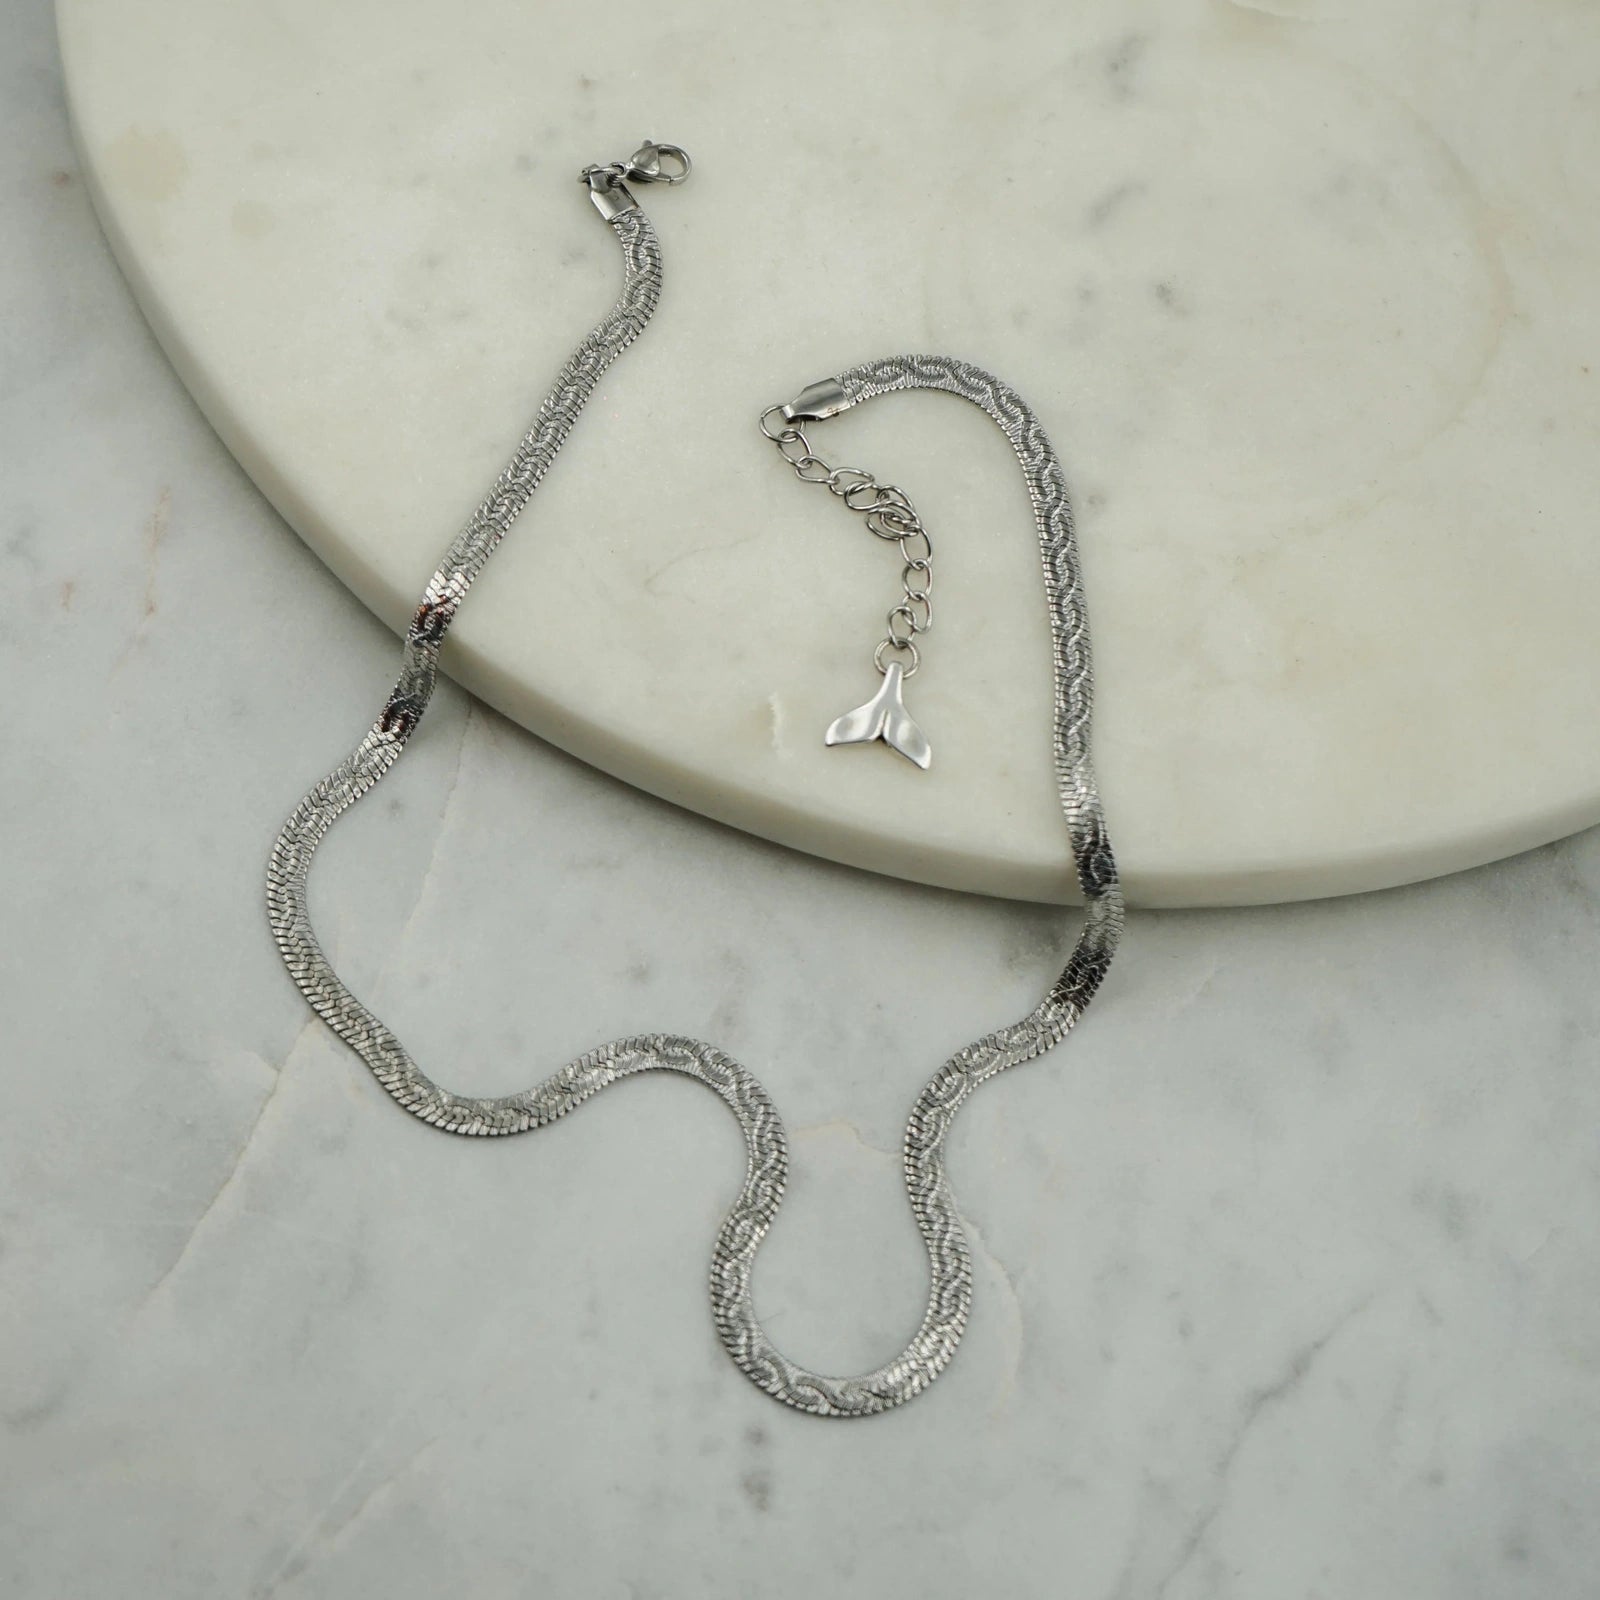 Chaîne argentée,dans un design de serpent, faite main par nos artisans.L'esprit grec minimaliste à son apogée. Portez-la avec d'autres chaînes ou colliers de notre collection de différentes longueurs et créez votre propre style "à la grecque" !